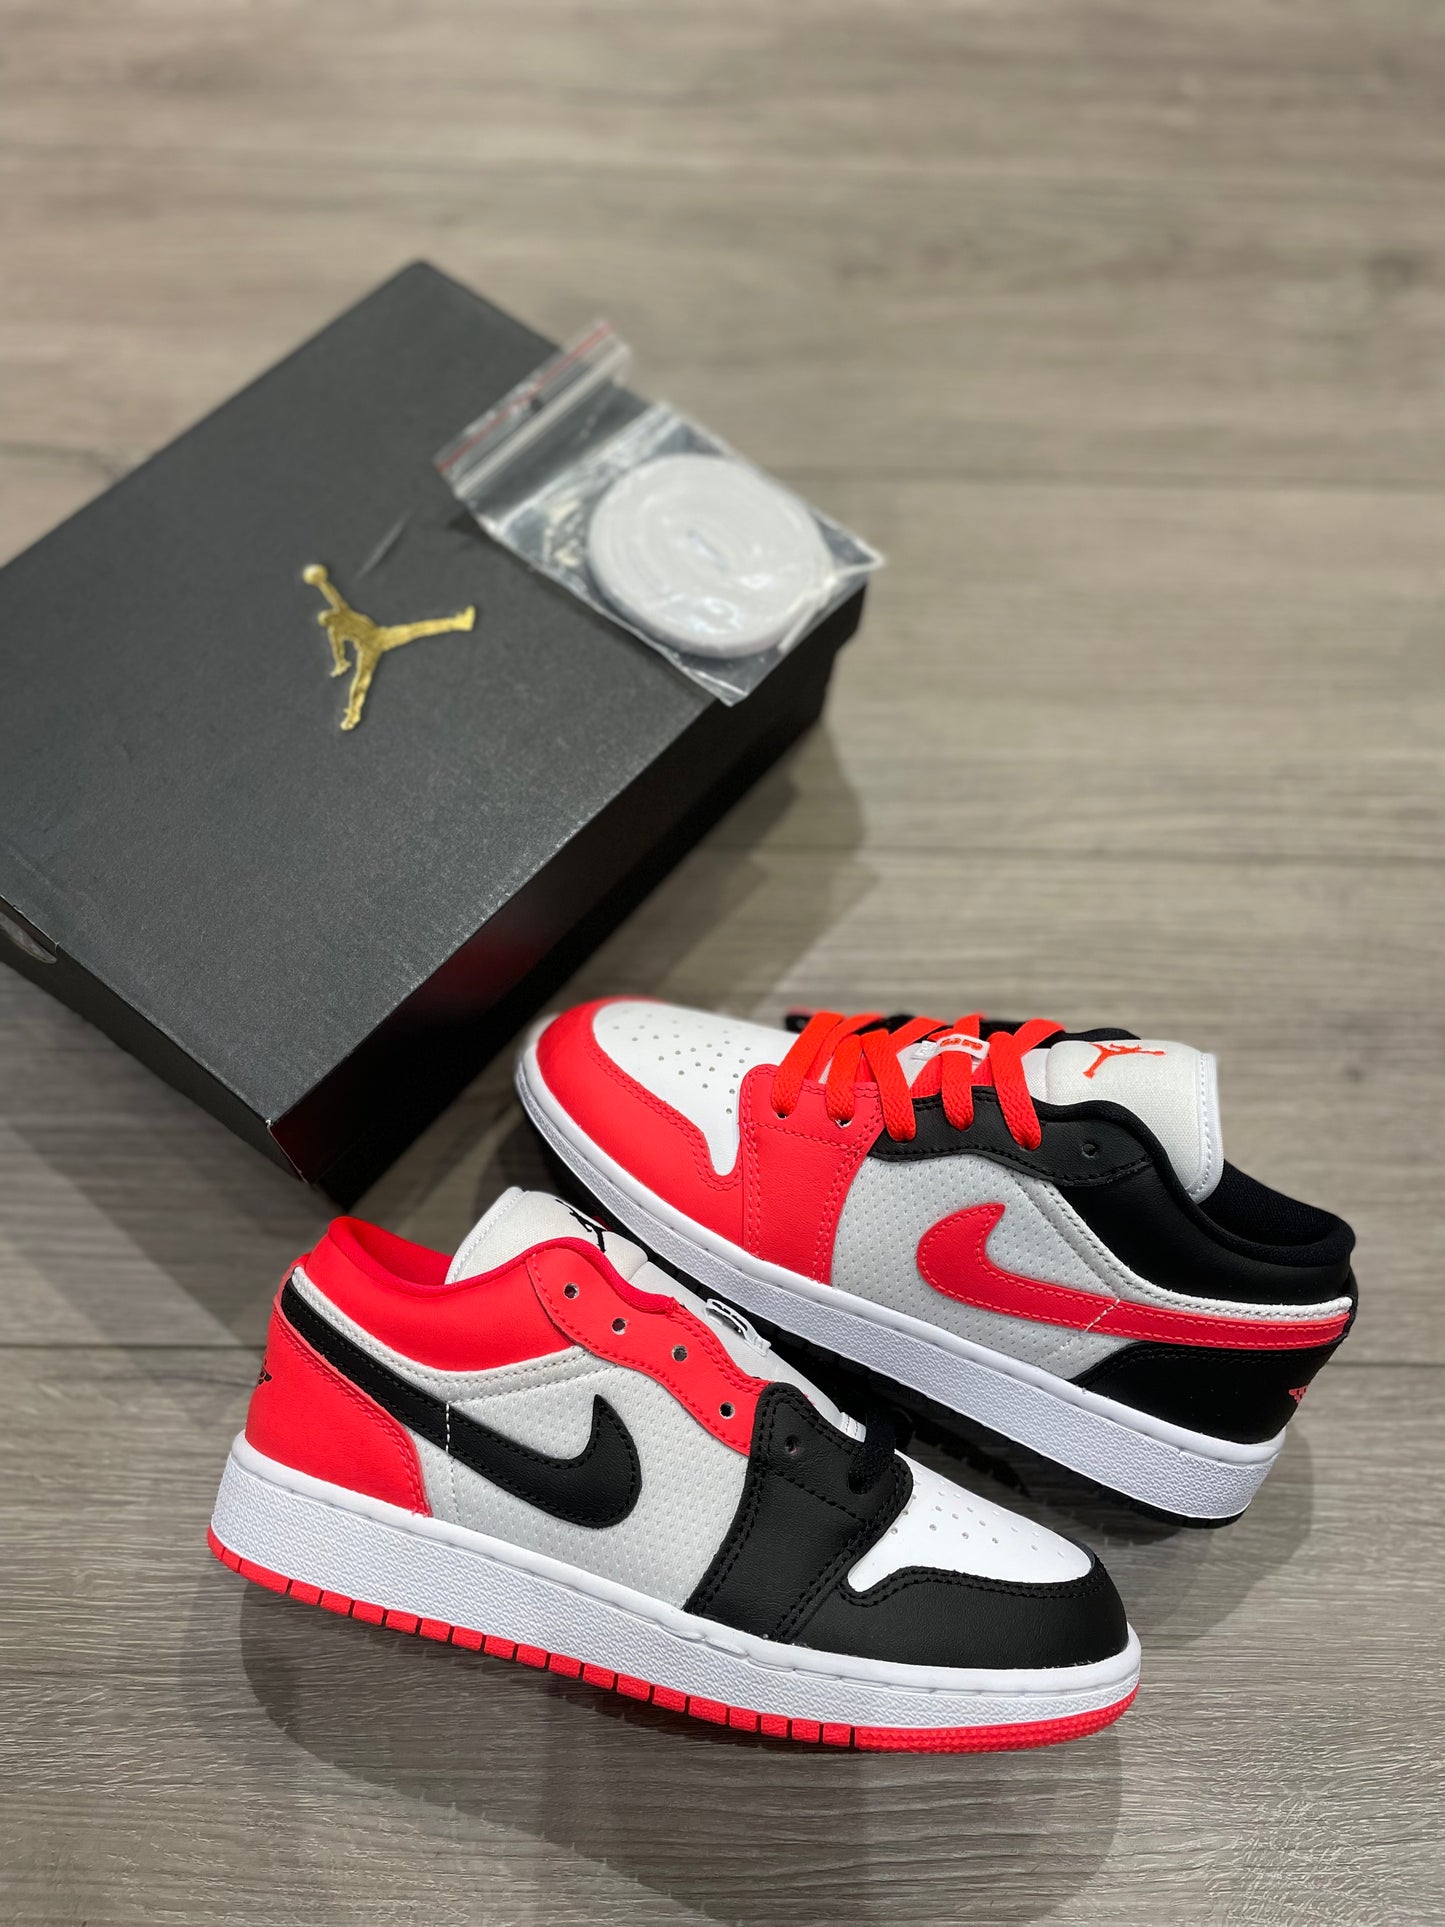 Air Jordan 1 Low “Infrared” (GS)